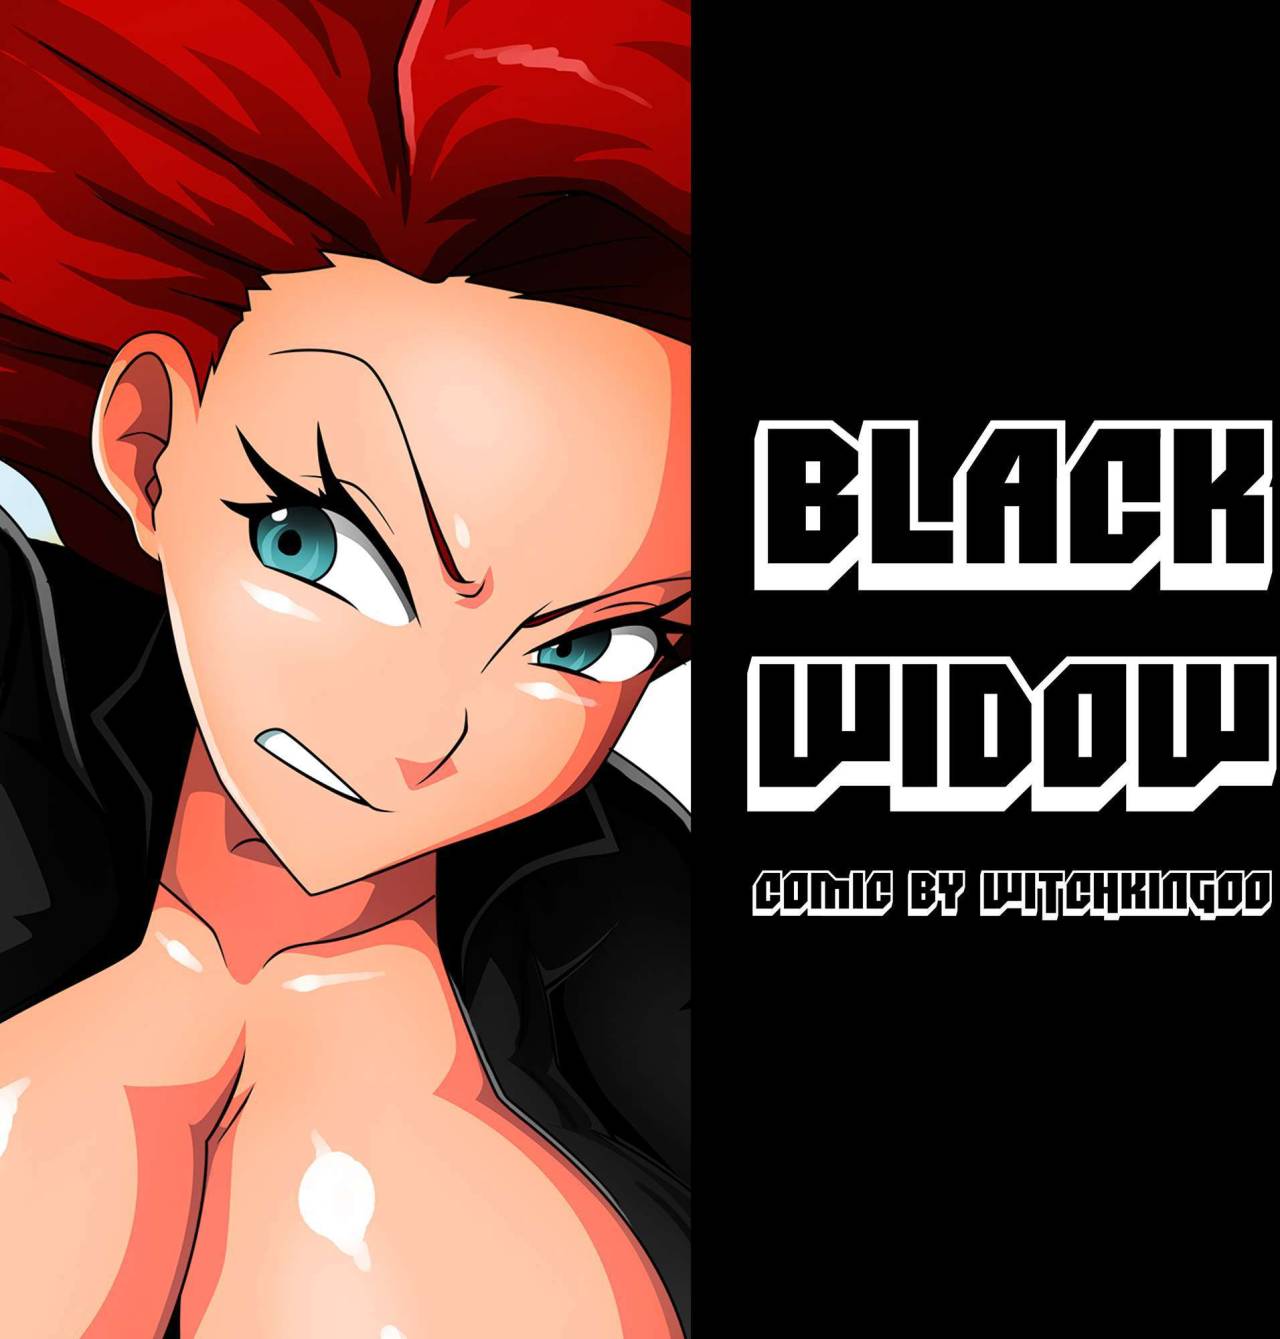 Black widow avengers porn hulk